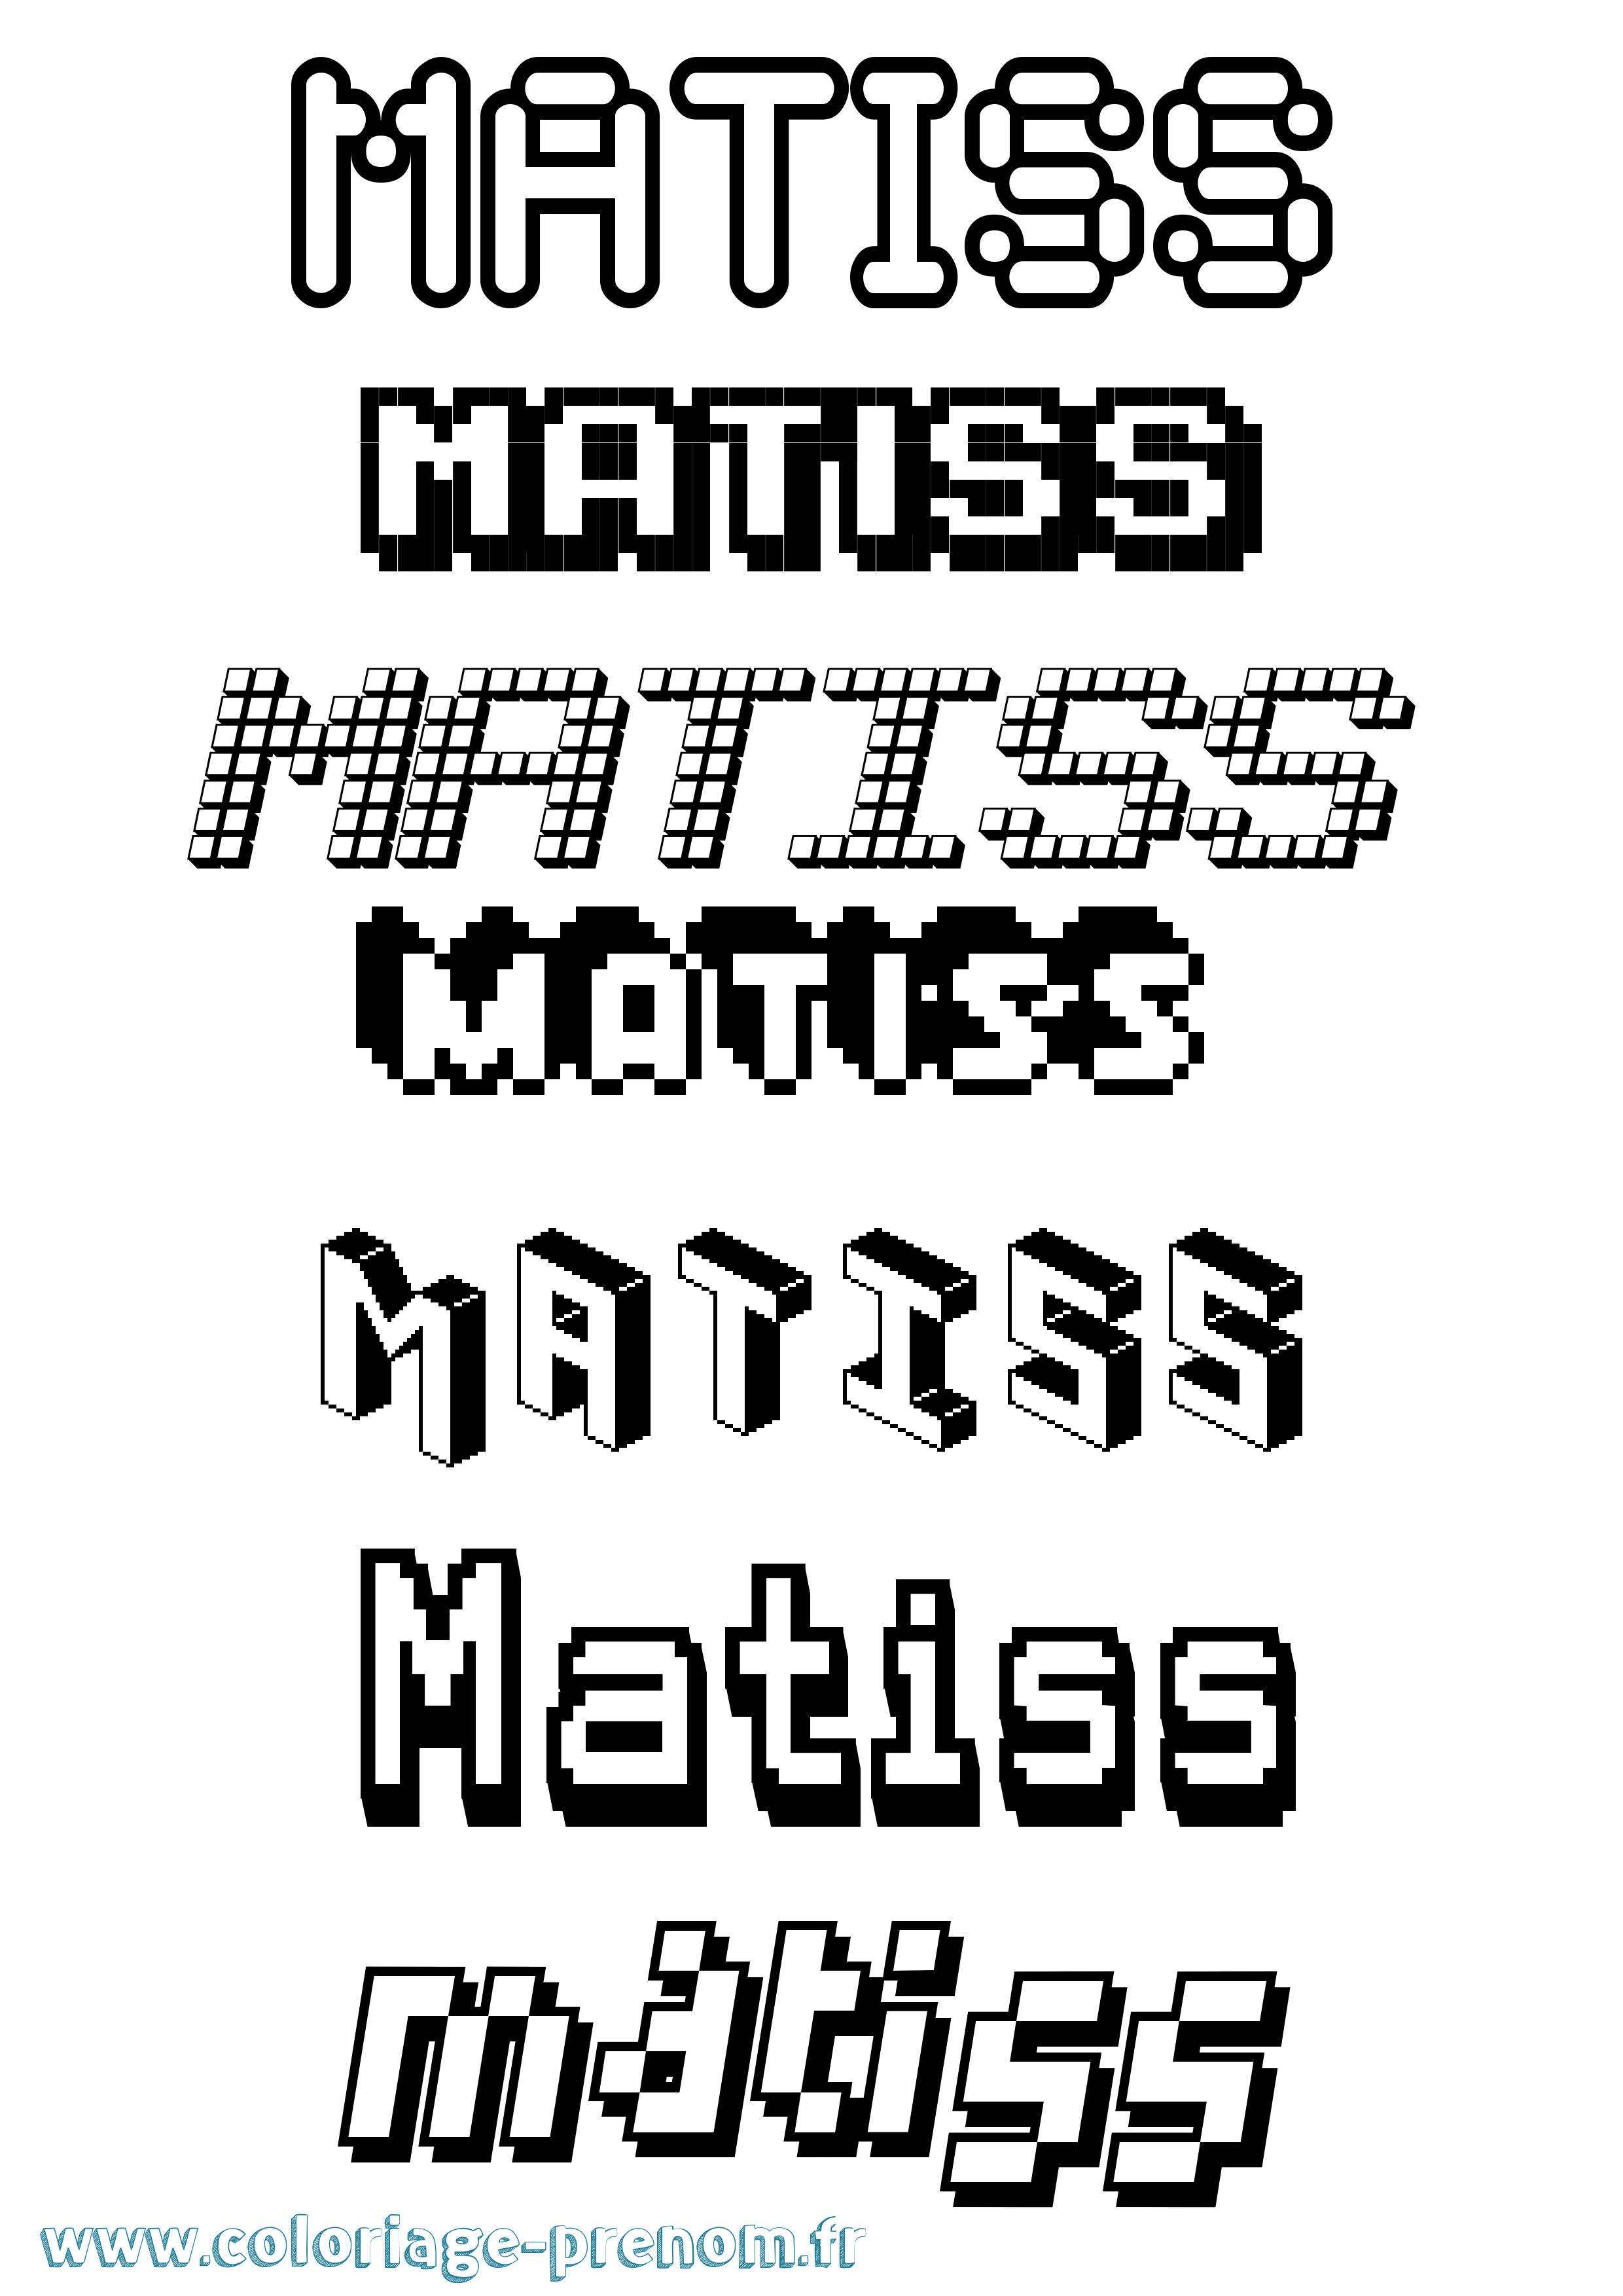 Coloriage prénom Matiss Pixel